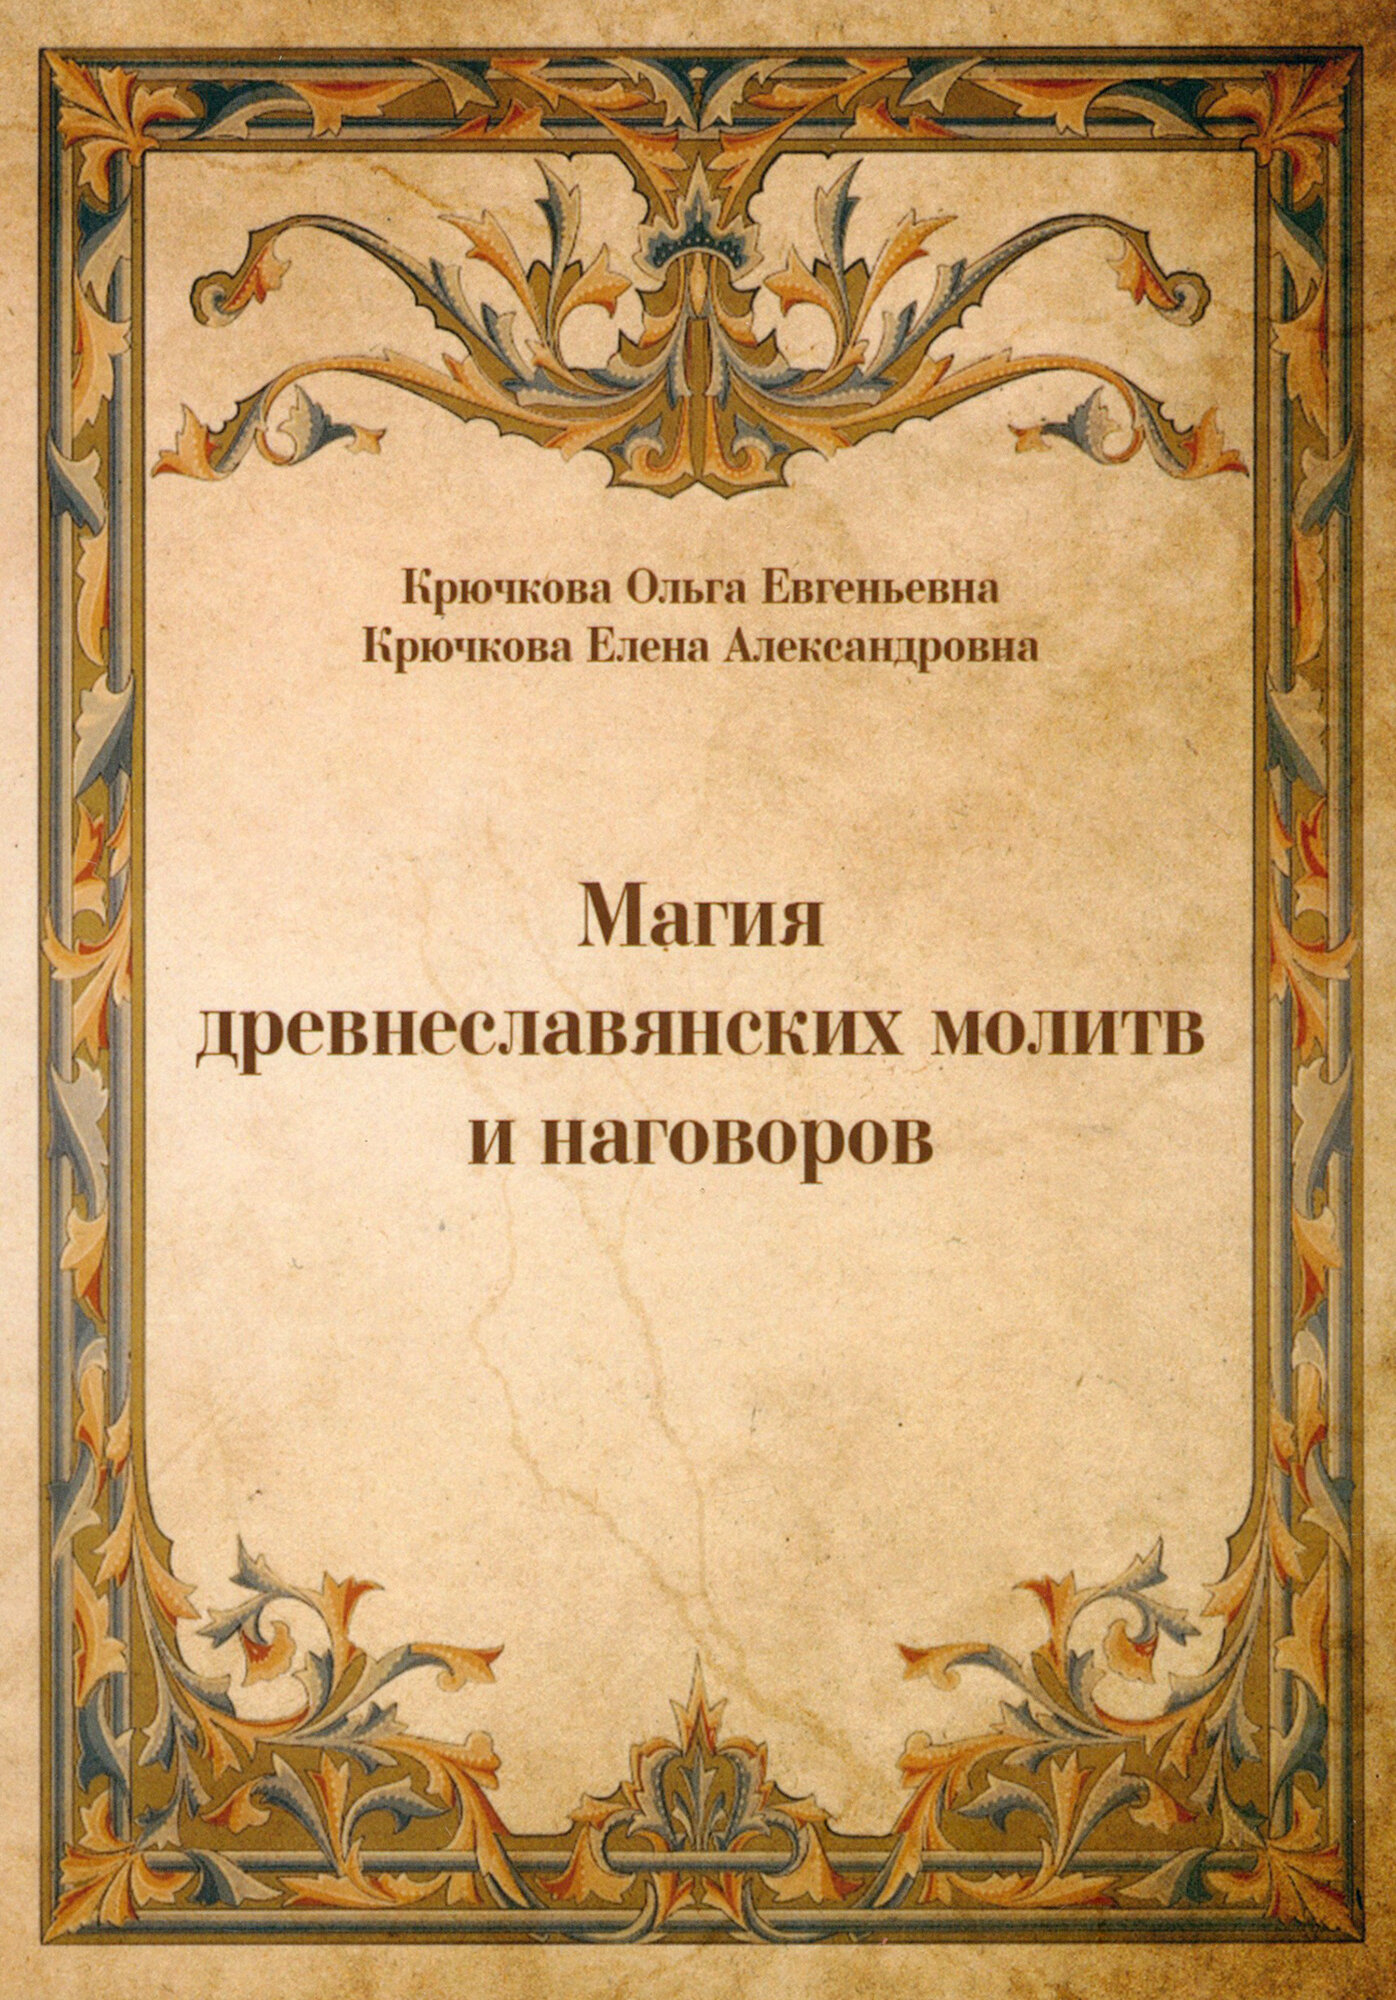 Магия древнеславянских молитв и наговоров - фото №2